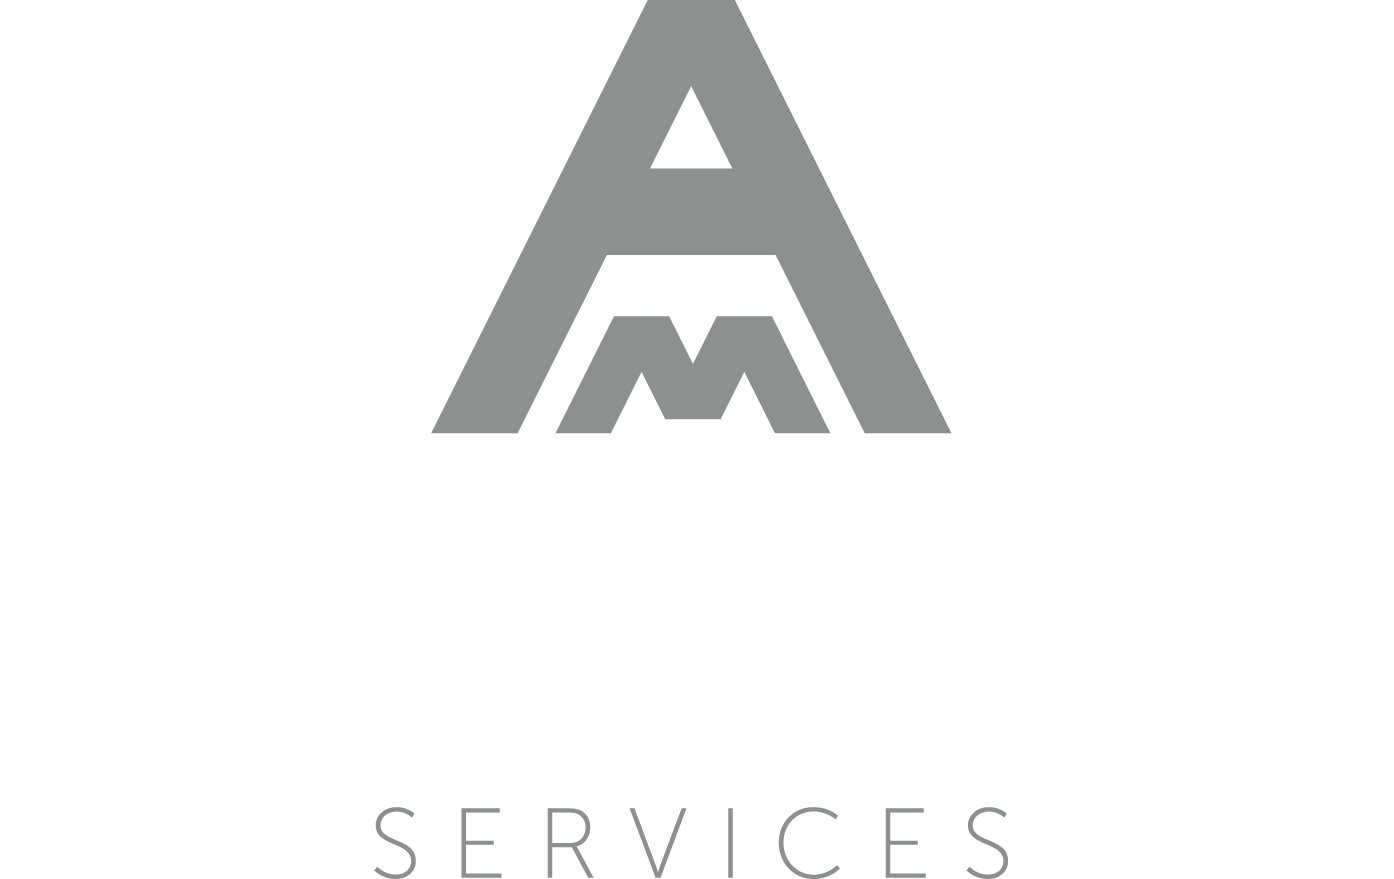 AM Building Services